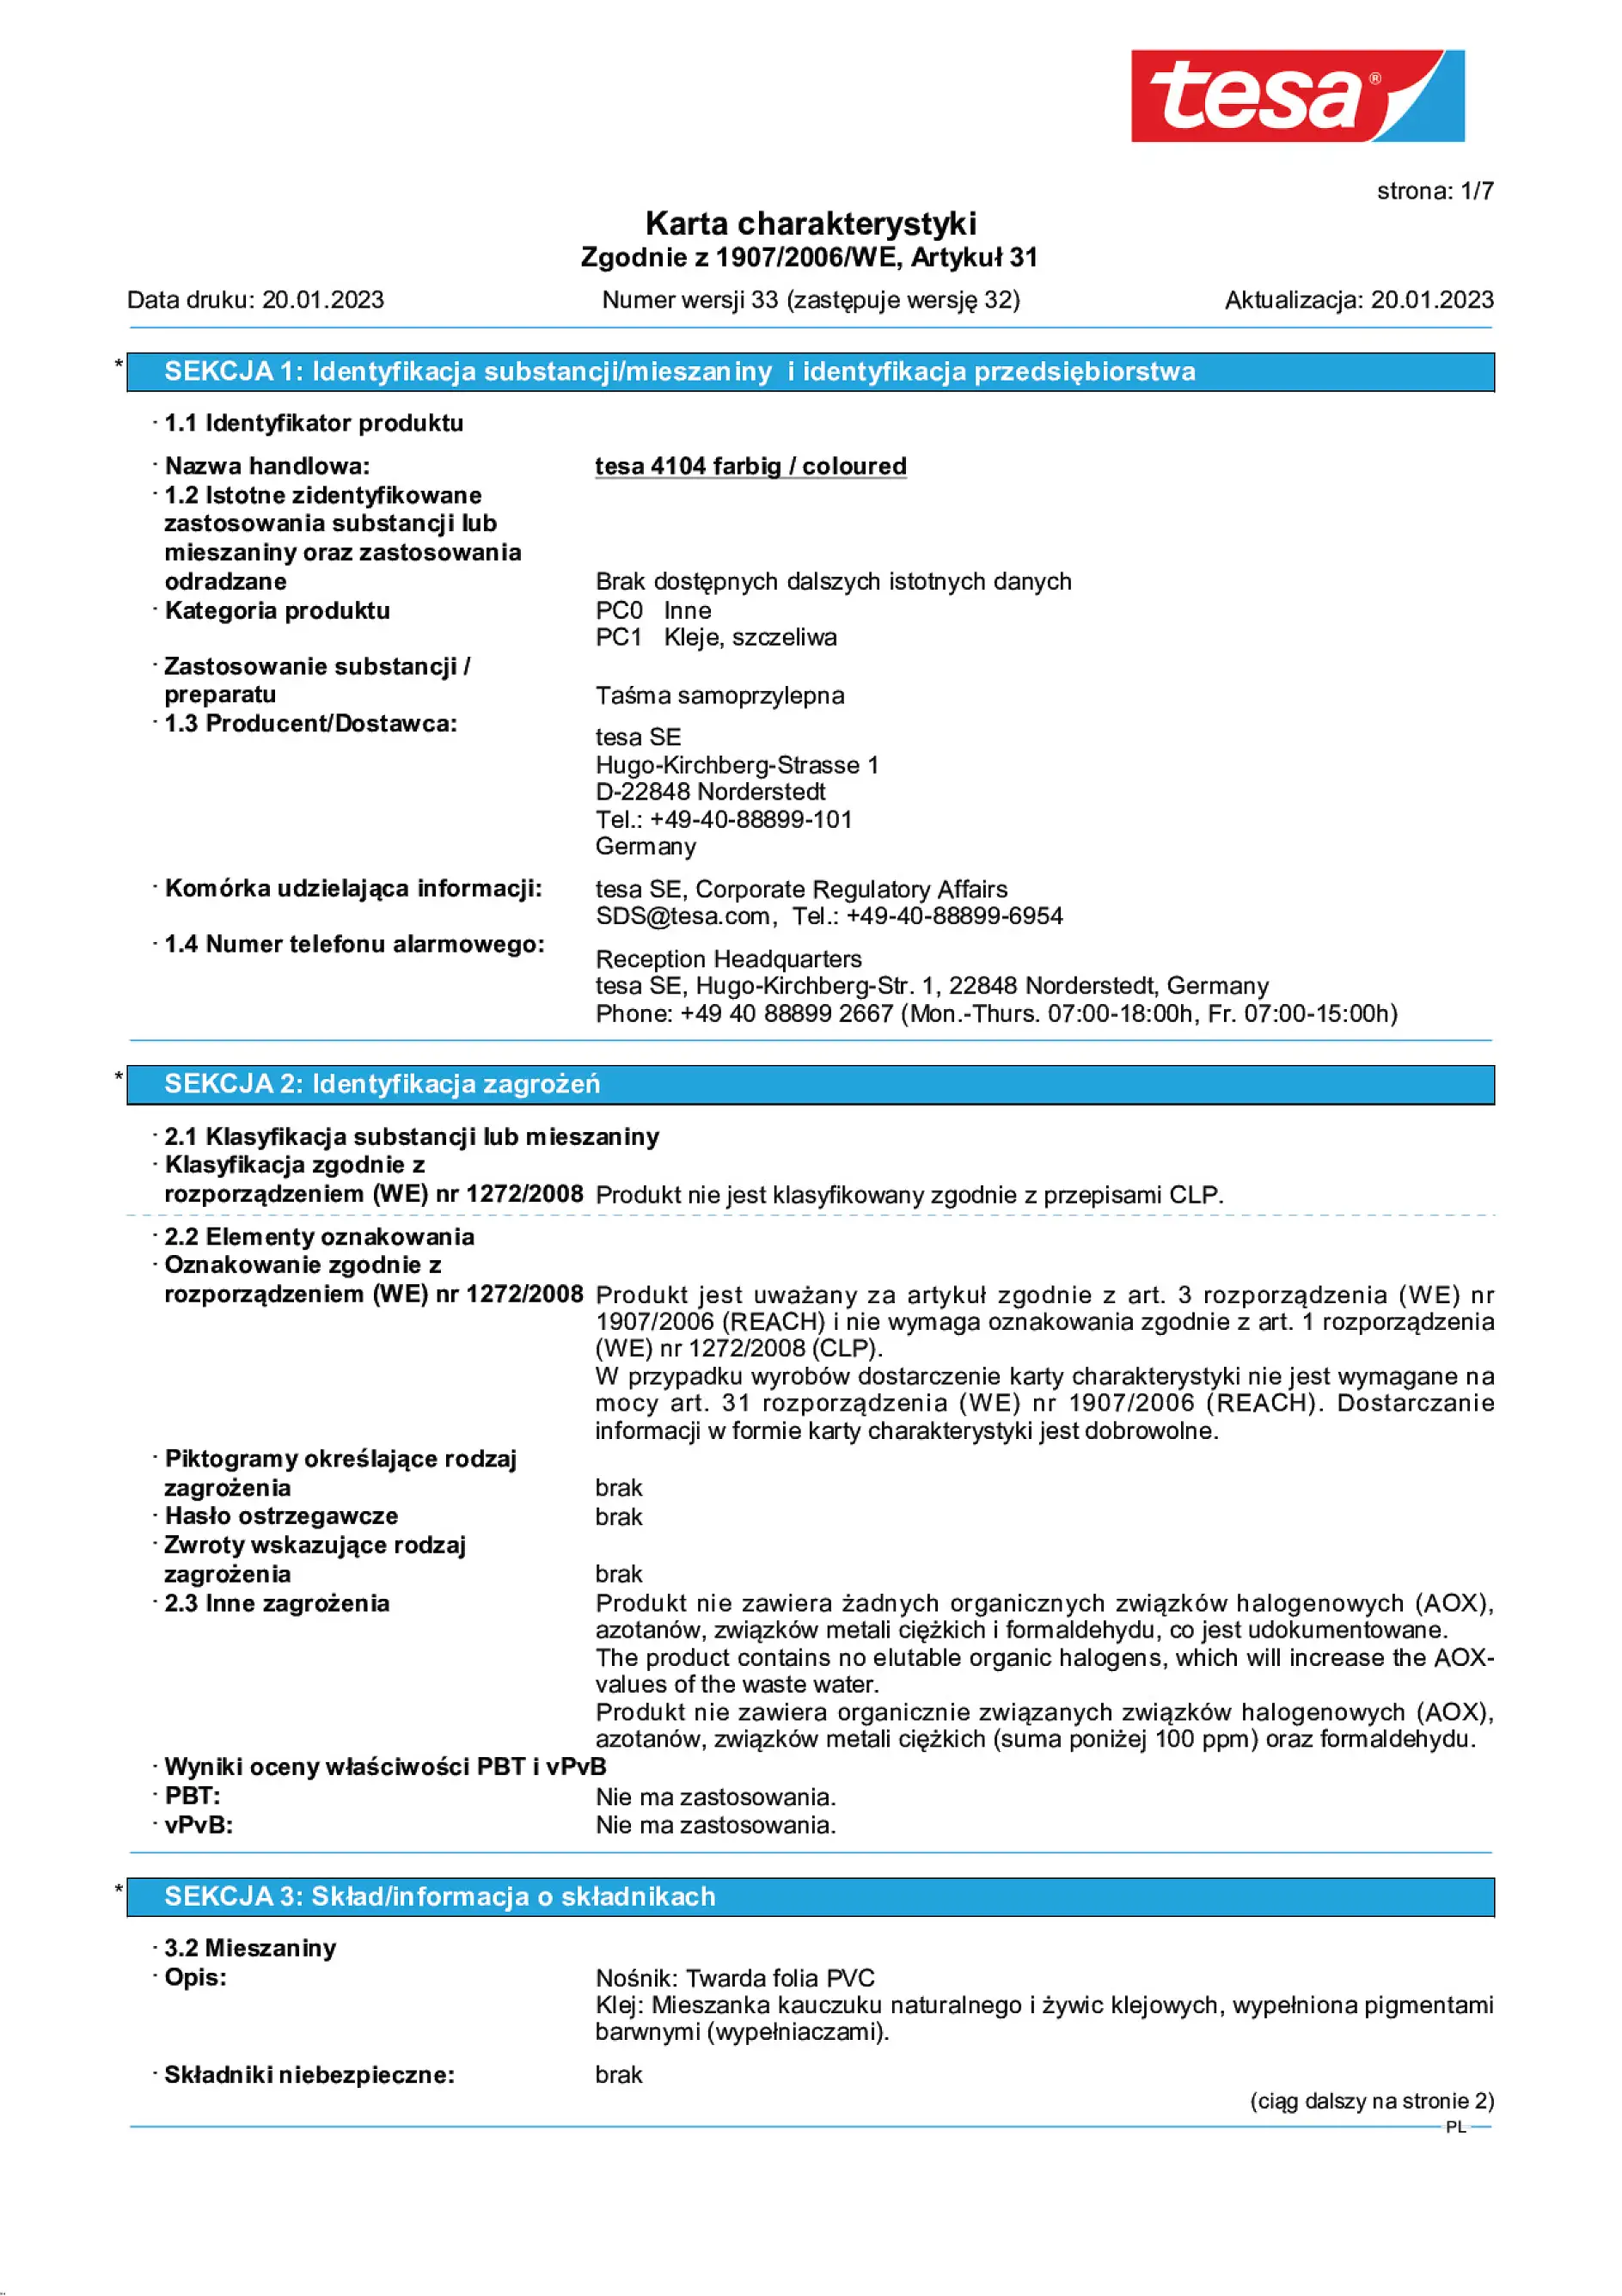 Safety data sheet_tesa® 04104_pl-PL_v33